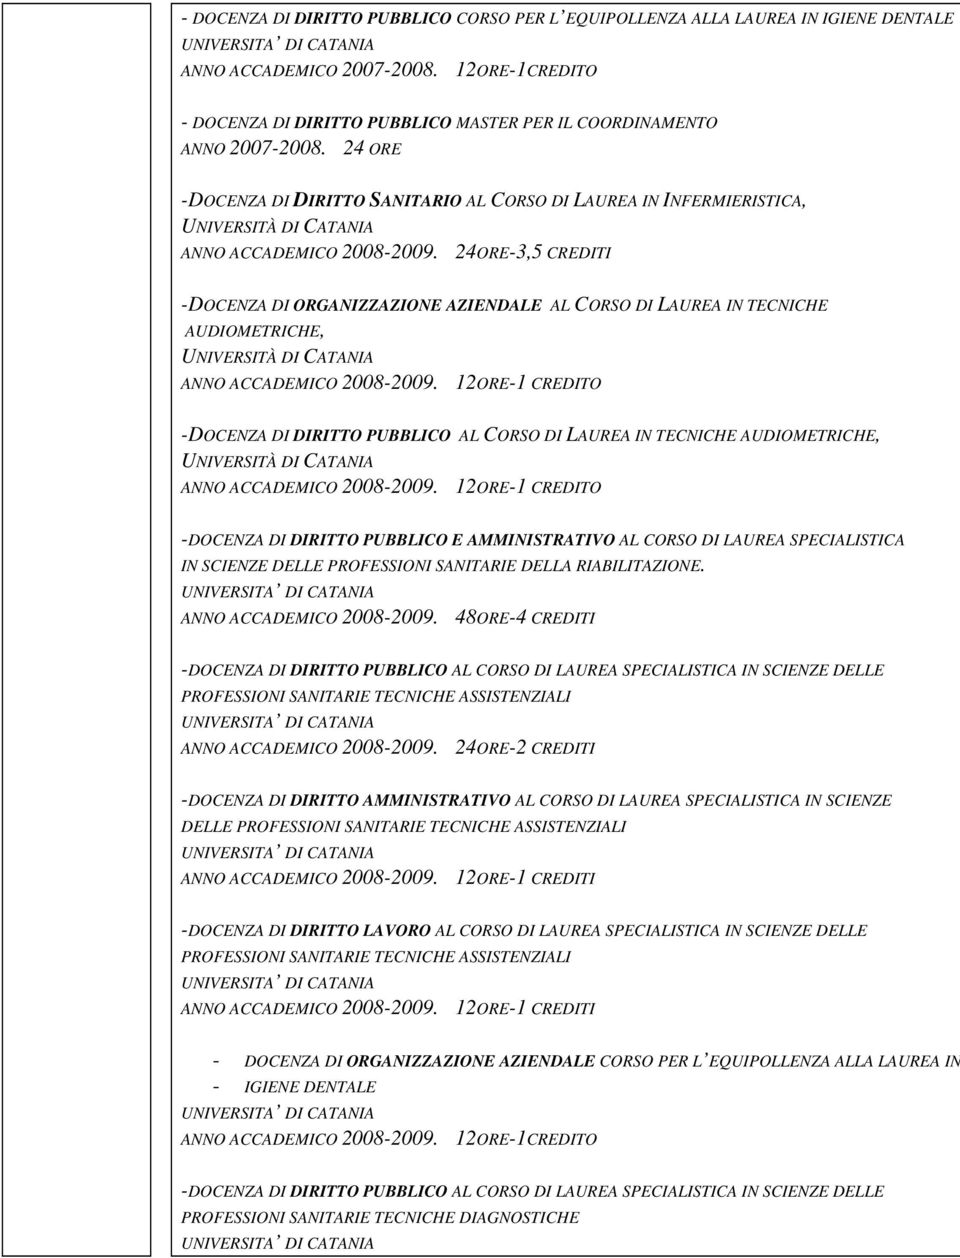 12ORE-1 CREDITO -DOCENZA DI DIRITTO PUBBLICO AL CORSO DI LAUREA IN TECNICHE AUDIOMETRICHE, ANNO ACCADEMICO 2008-2009.